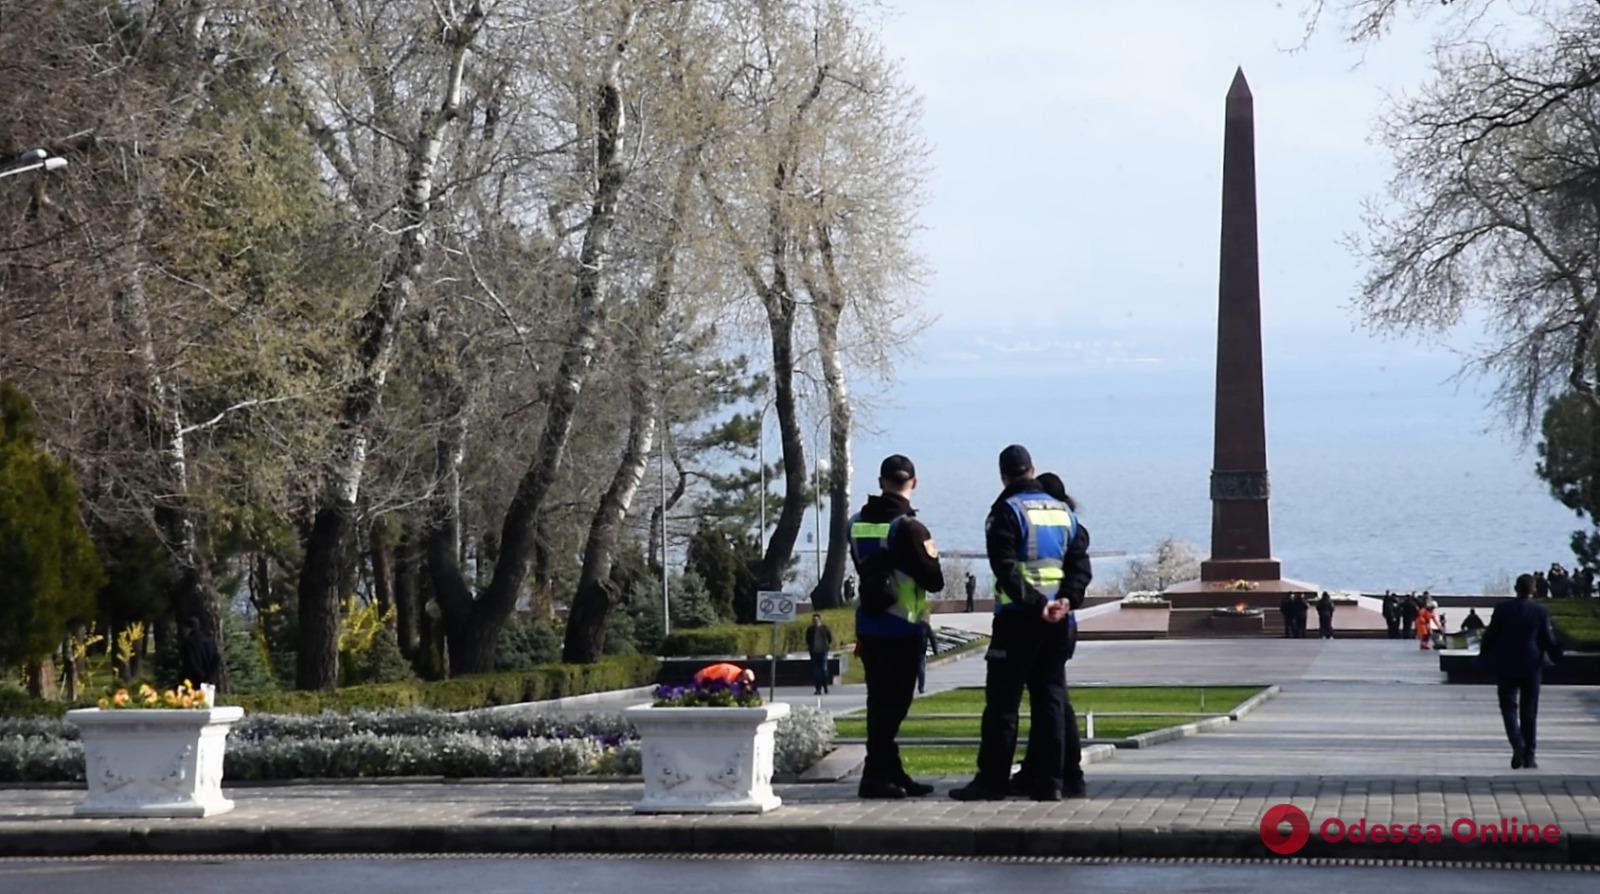 Памятные мероприятия 10 апреля в Одессе прошли спокойно, – начальник областной полиции